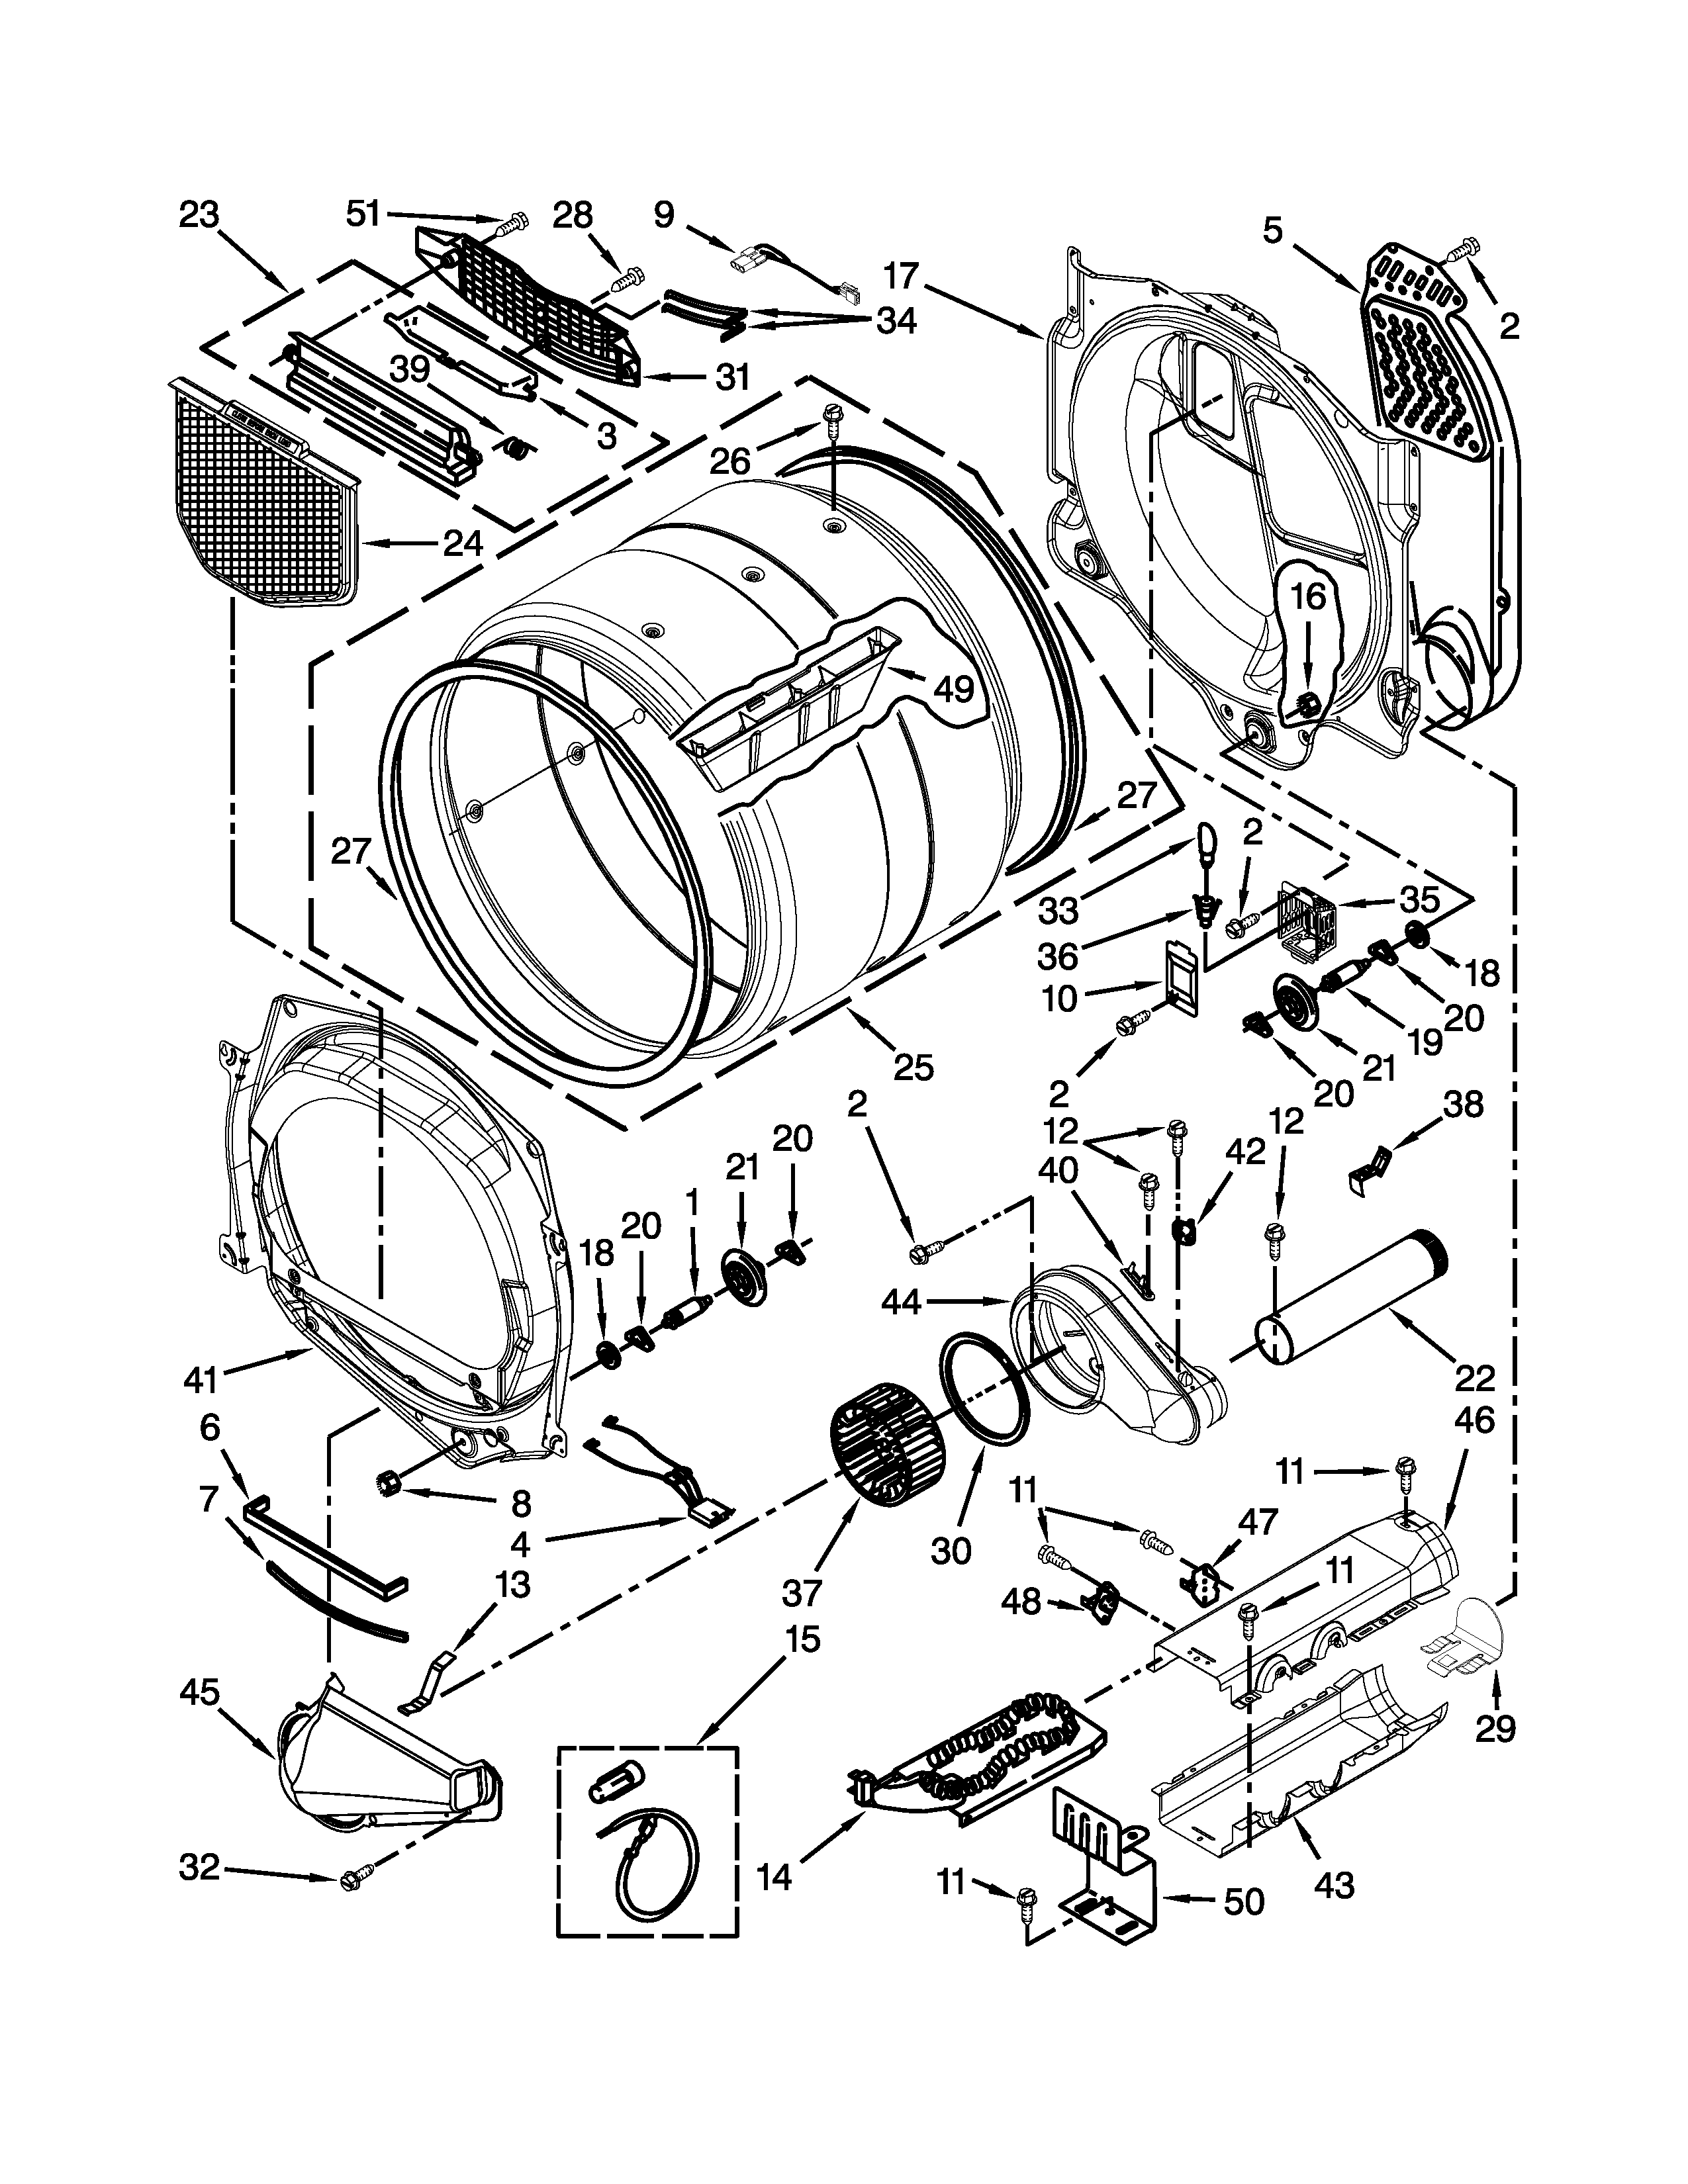 Whirlpool Duet Dryer Wiring Schematic - Complete Wiring Schemas